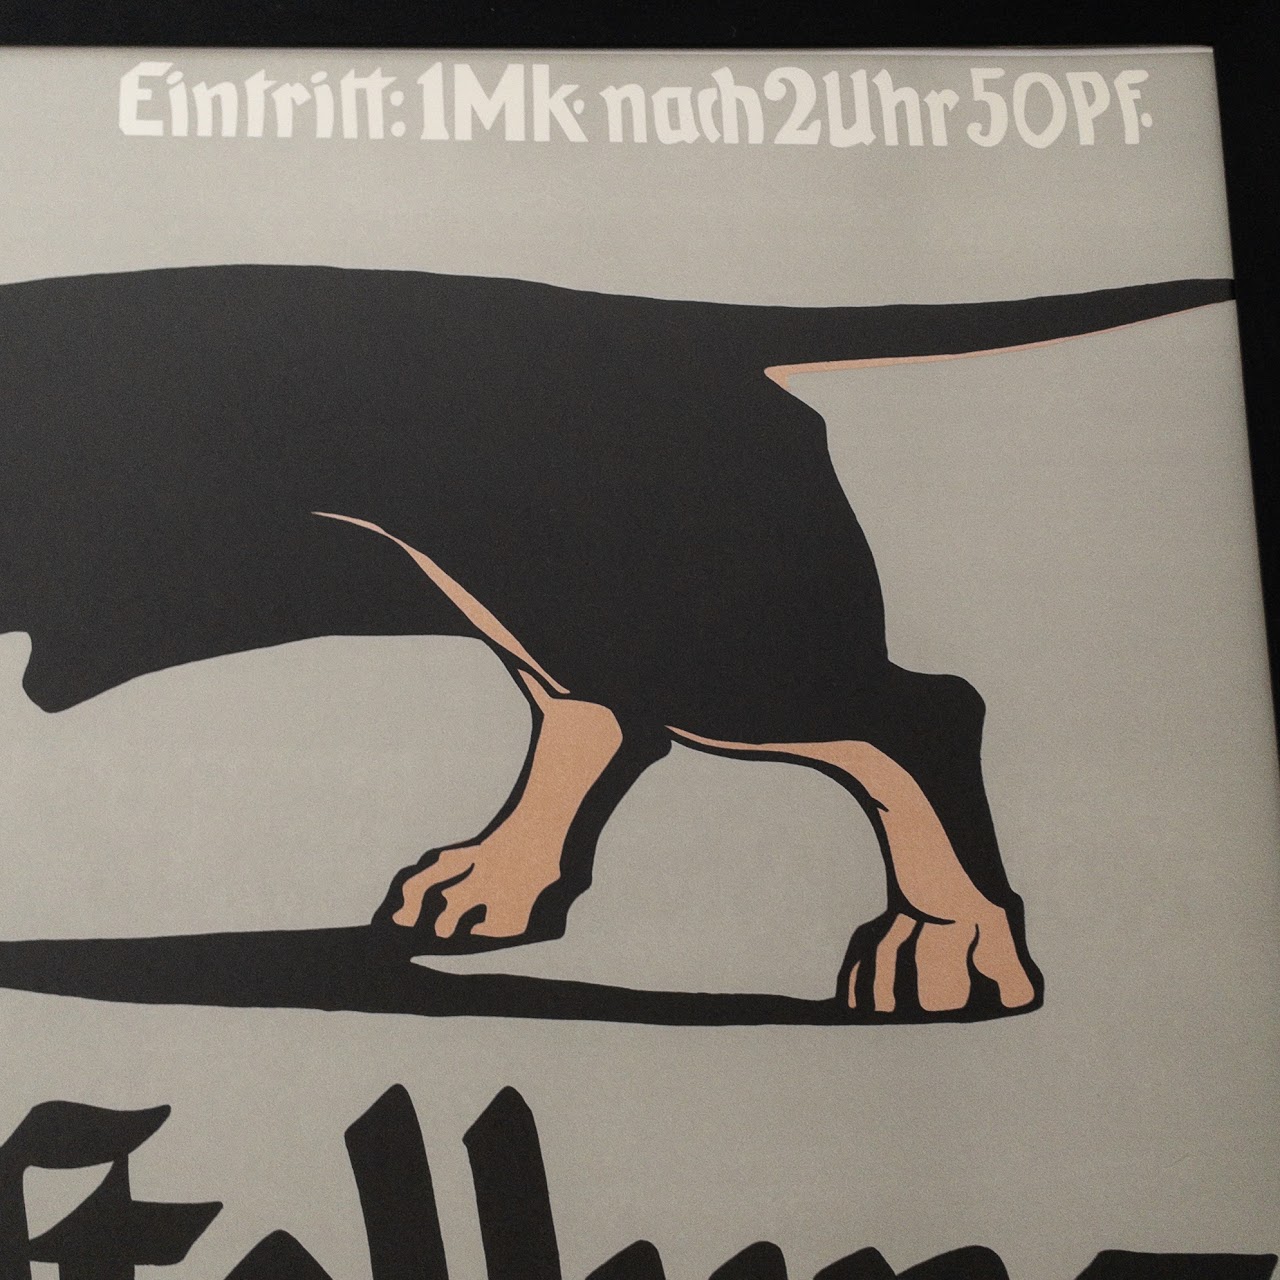 Hunde Ausstellung Dachshund Poster